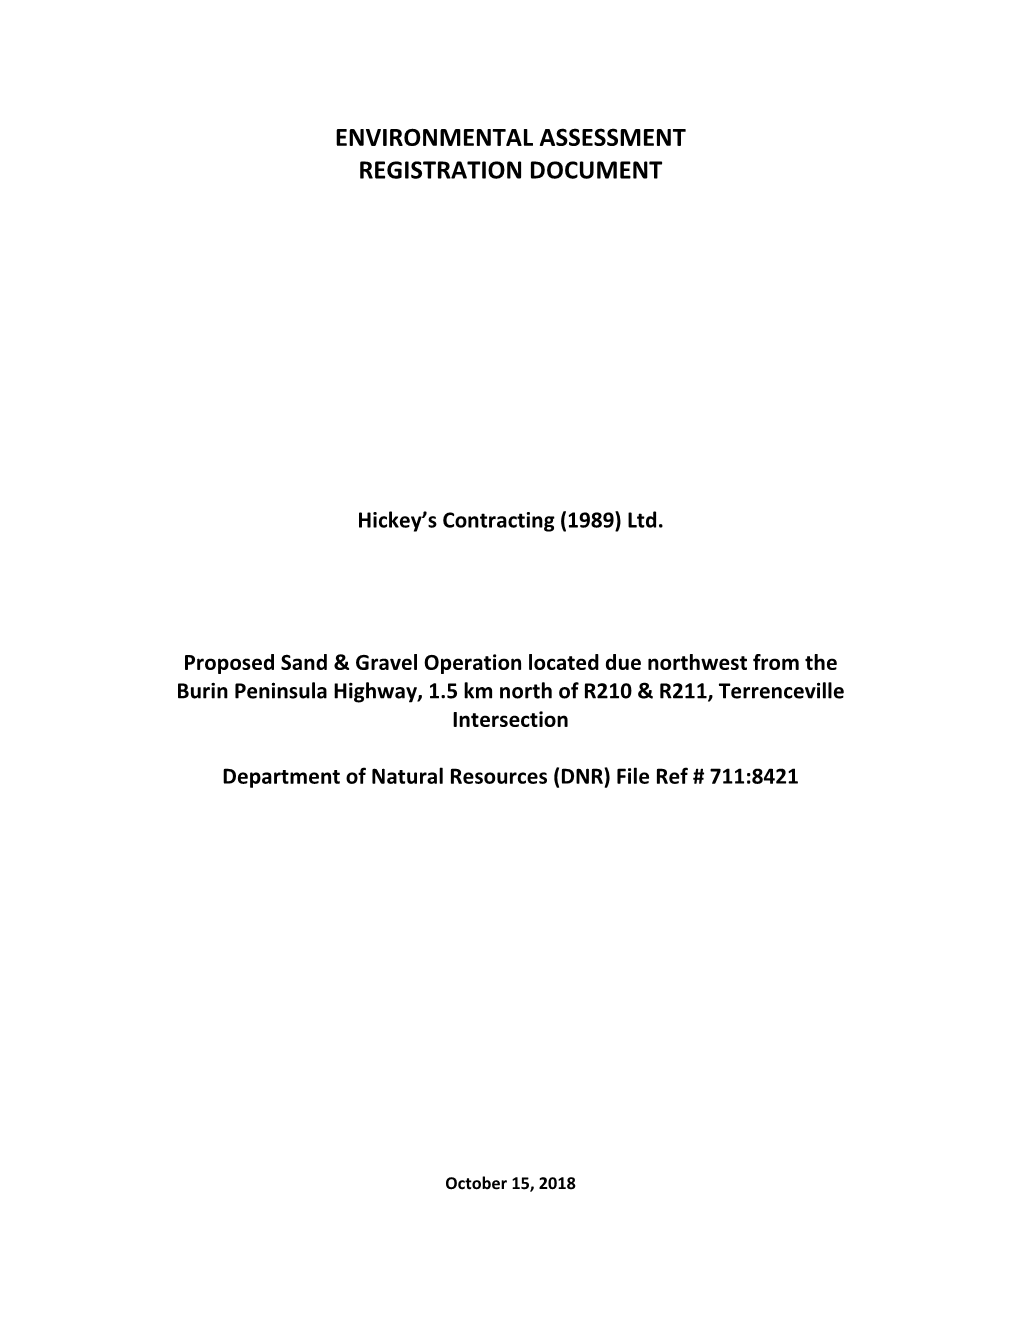 Environmental Assessment Registration Document